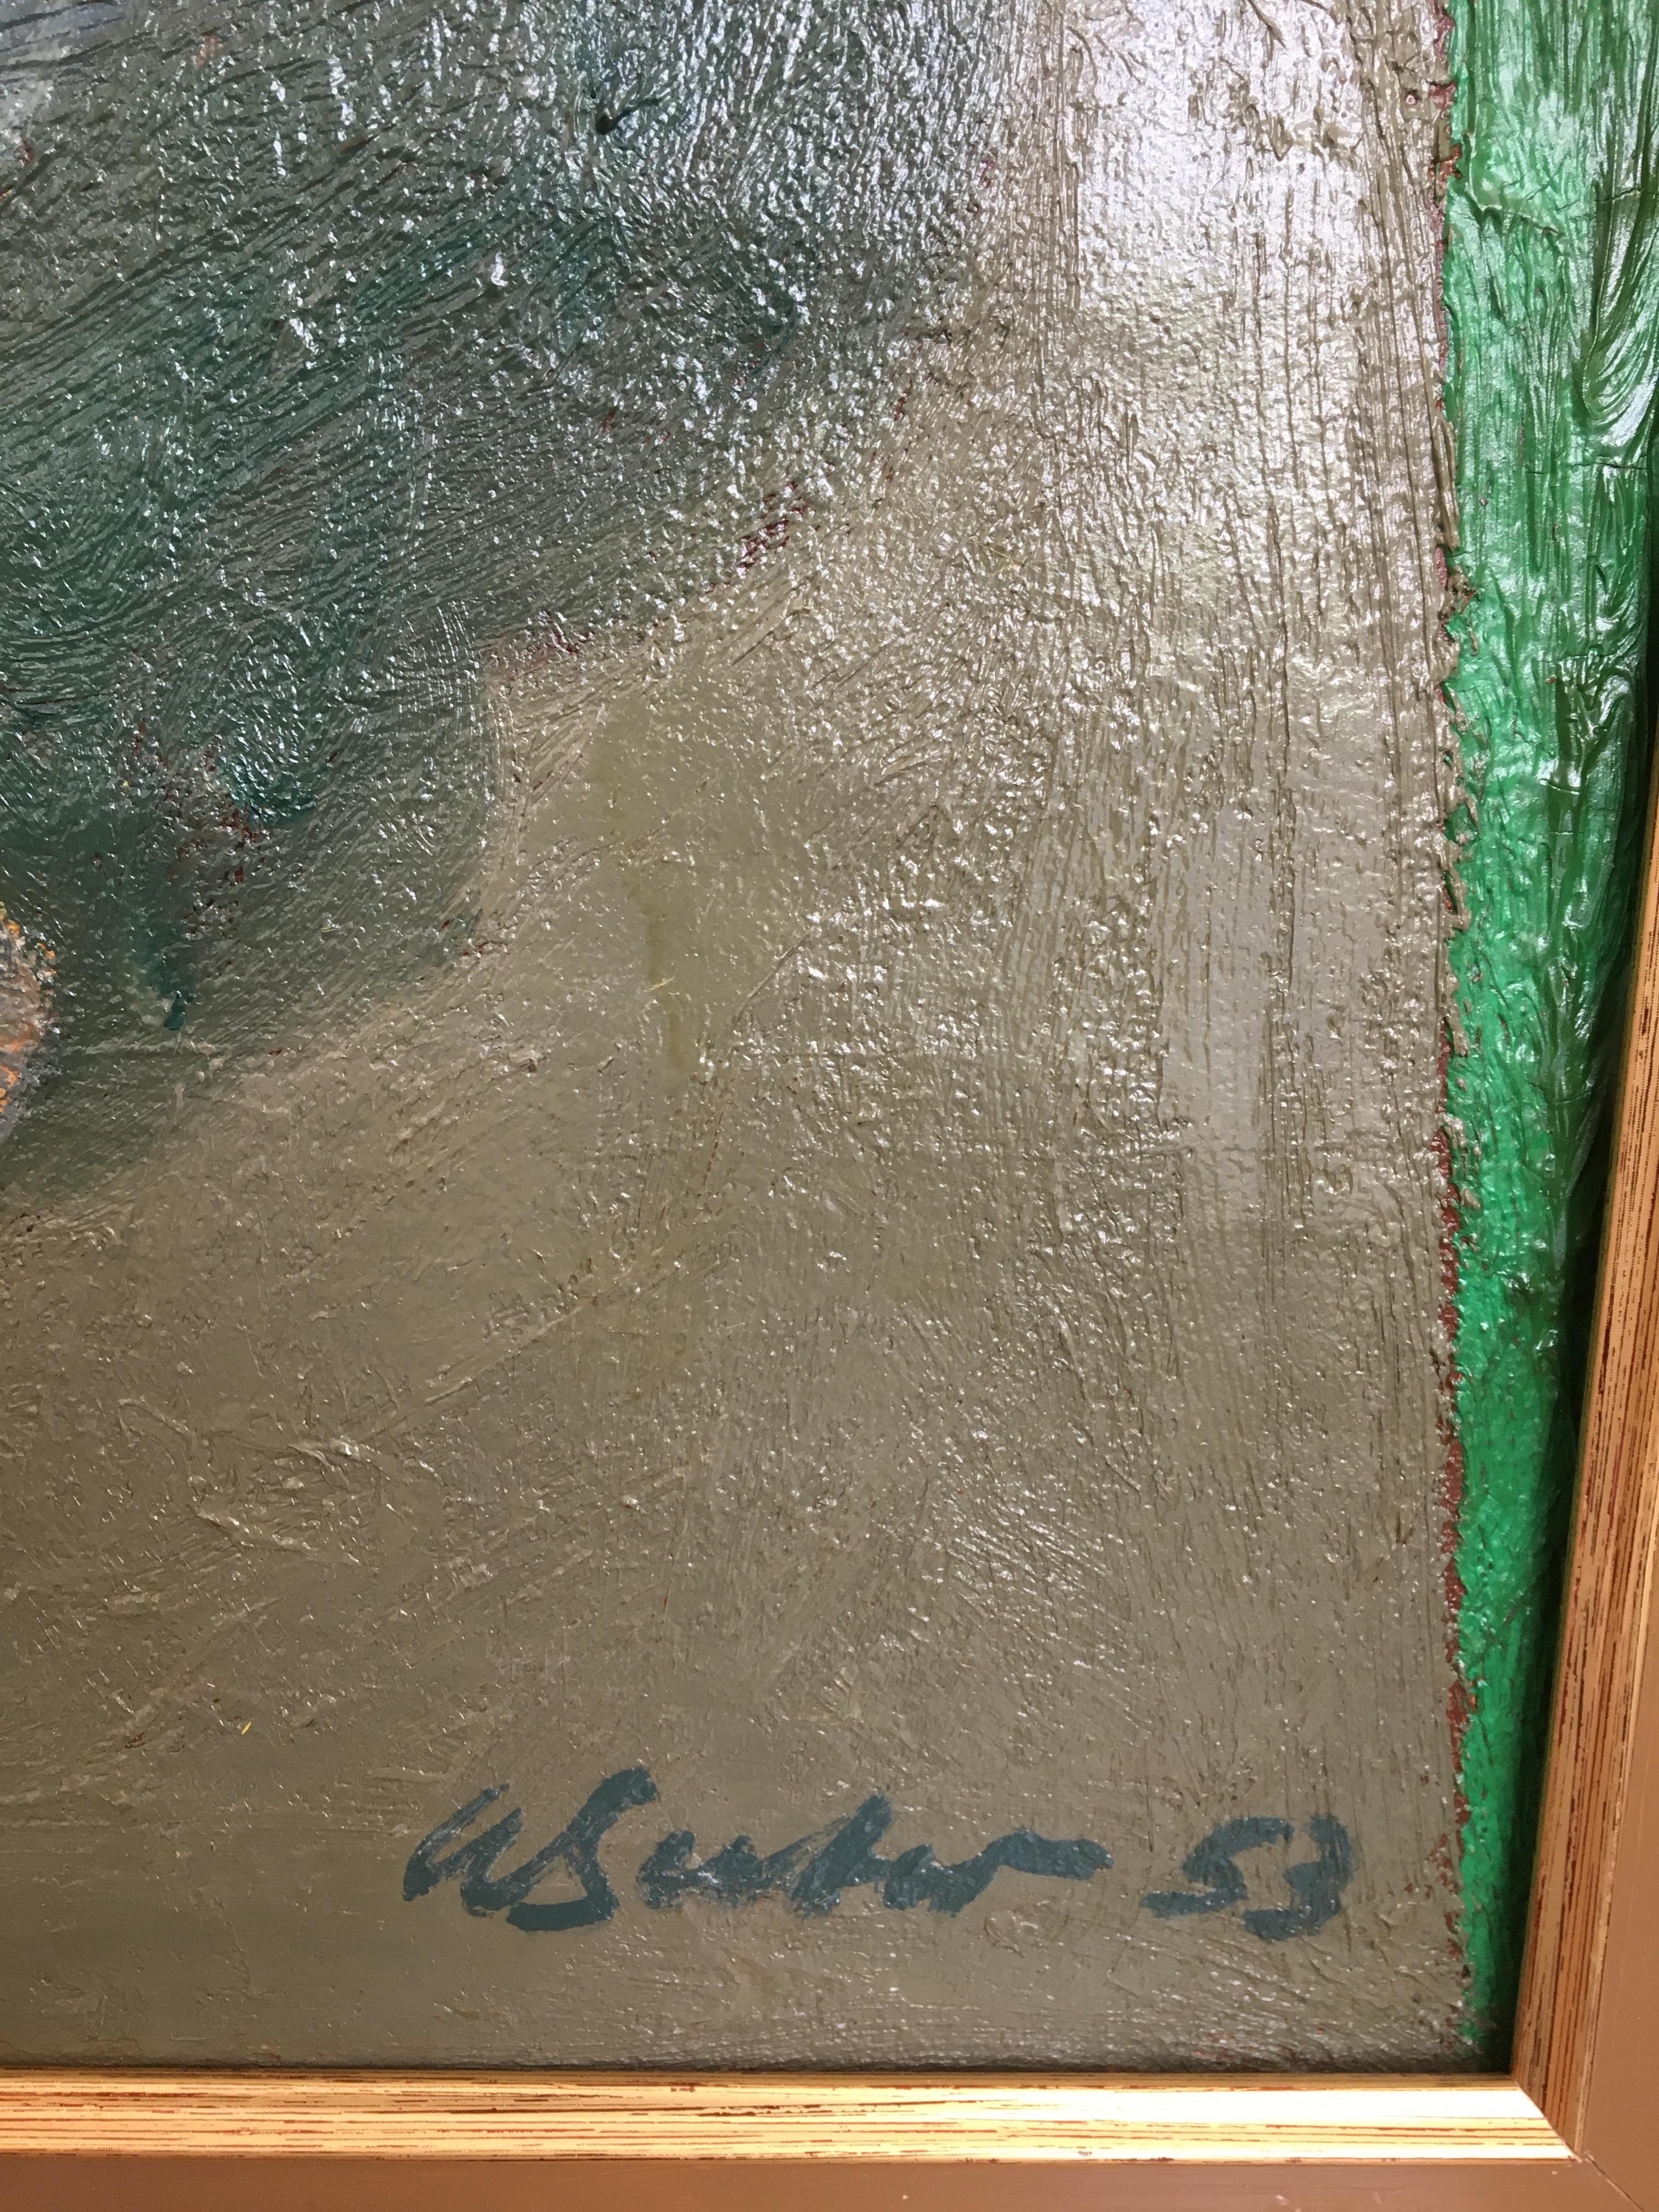 Portrait d'une jeune femme peint au dos de la toile

Travail sur toile
Cadre en bois doré
60 x 65 x 5 cm